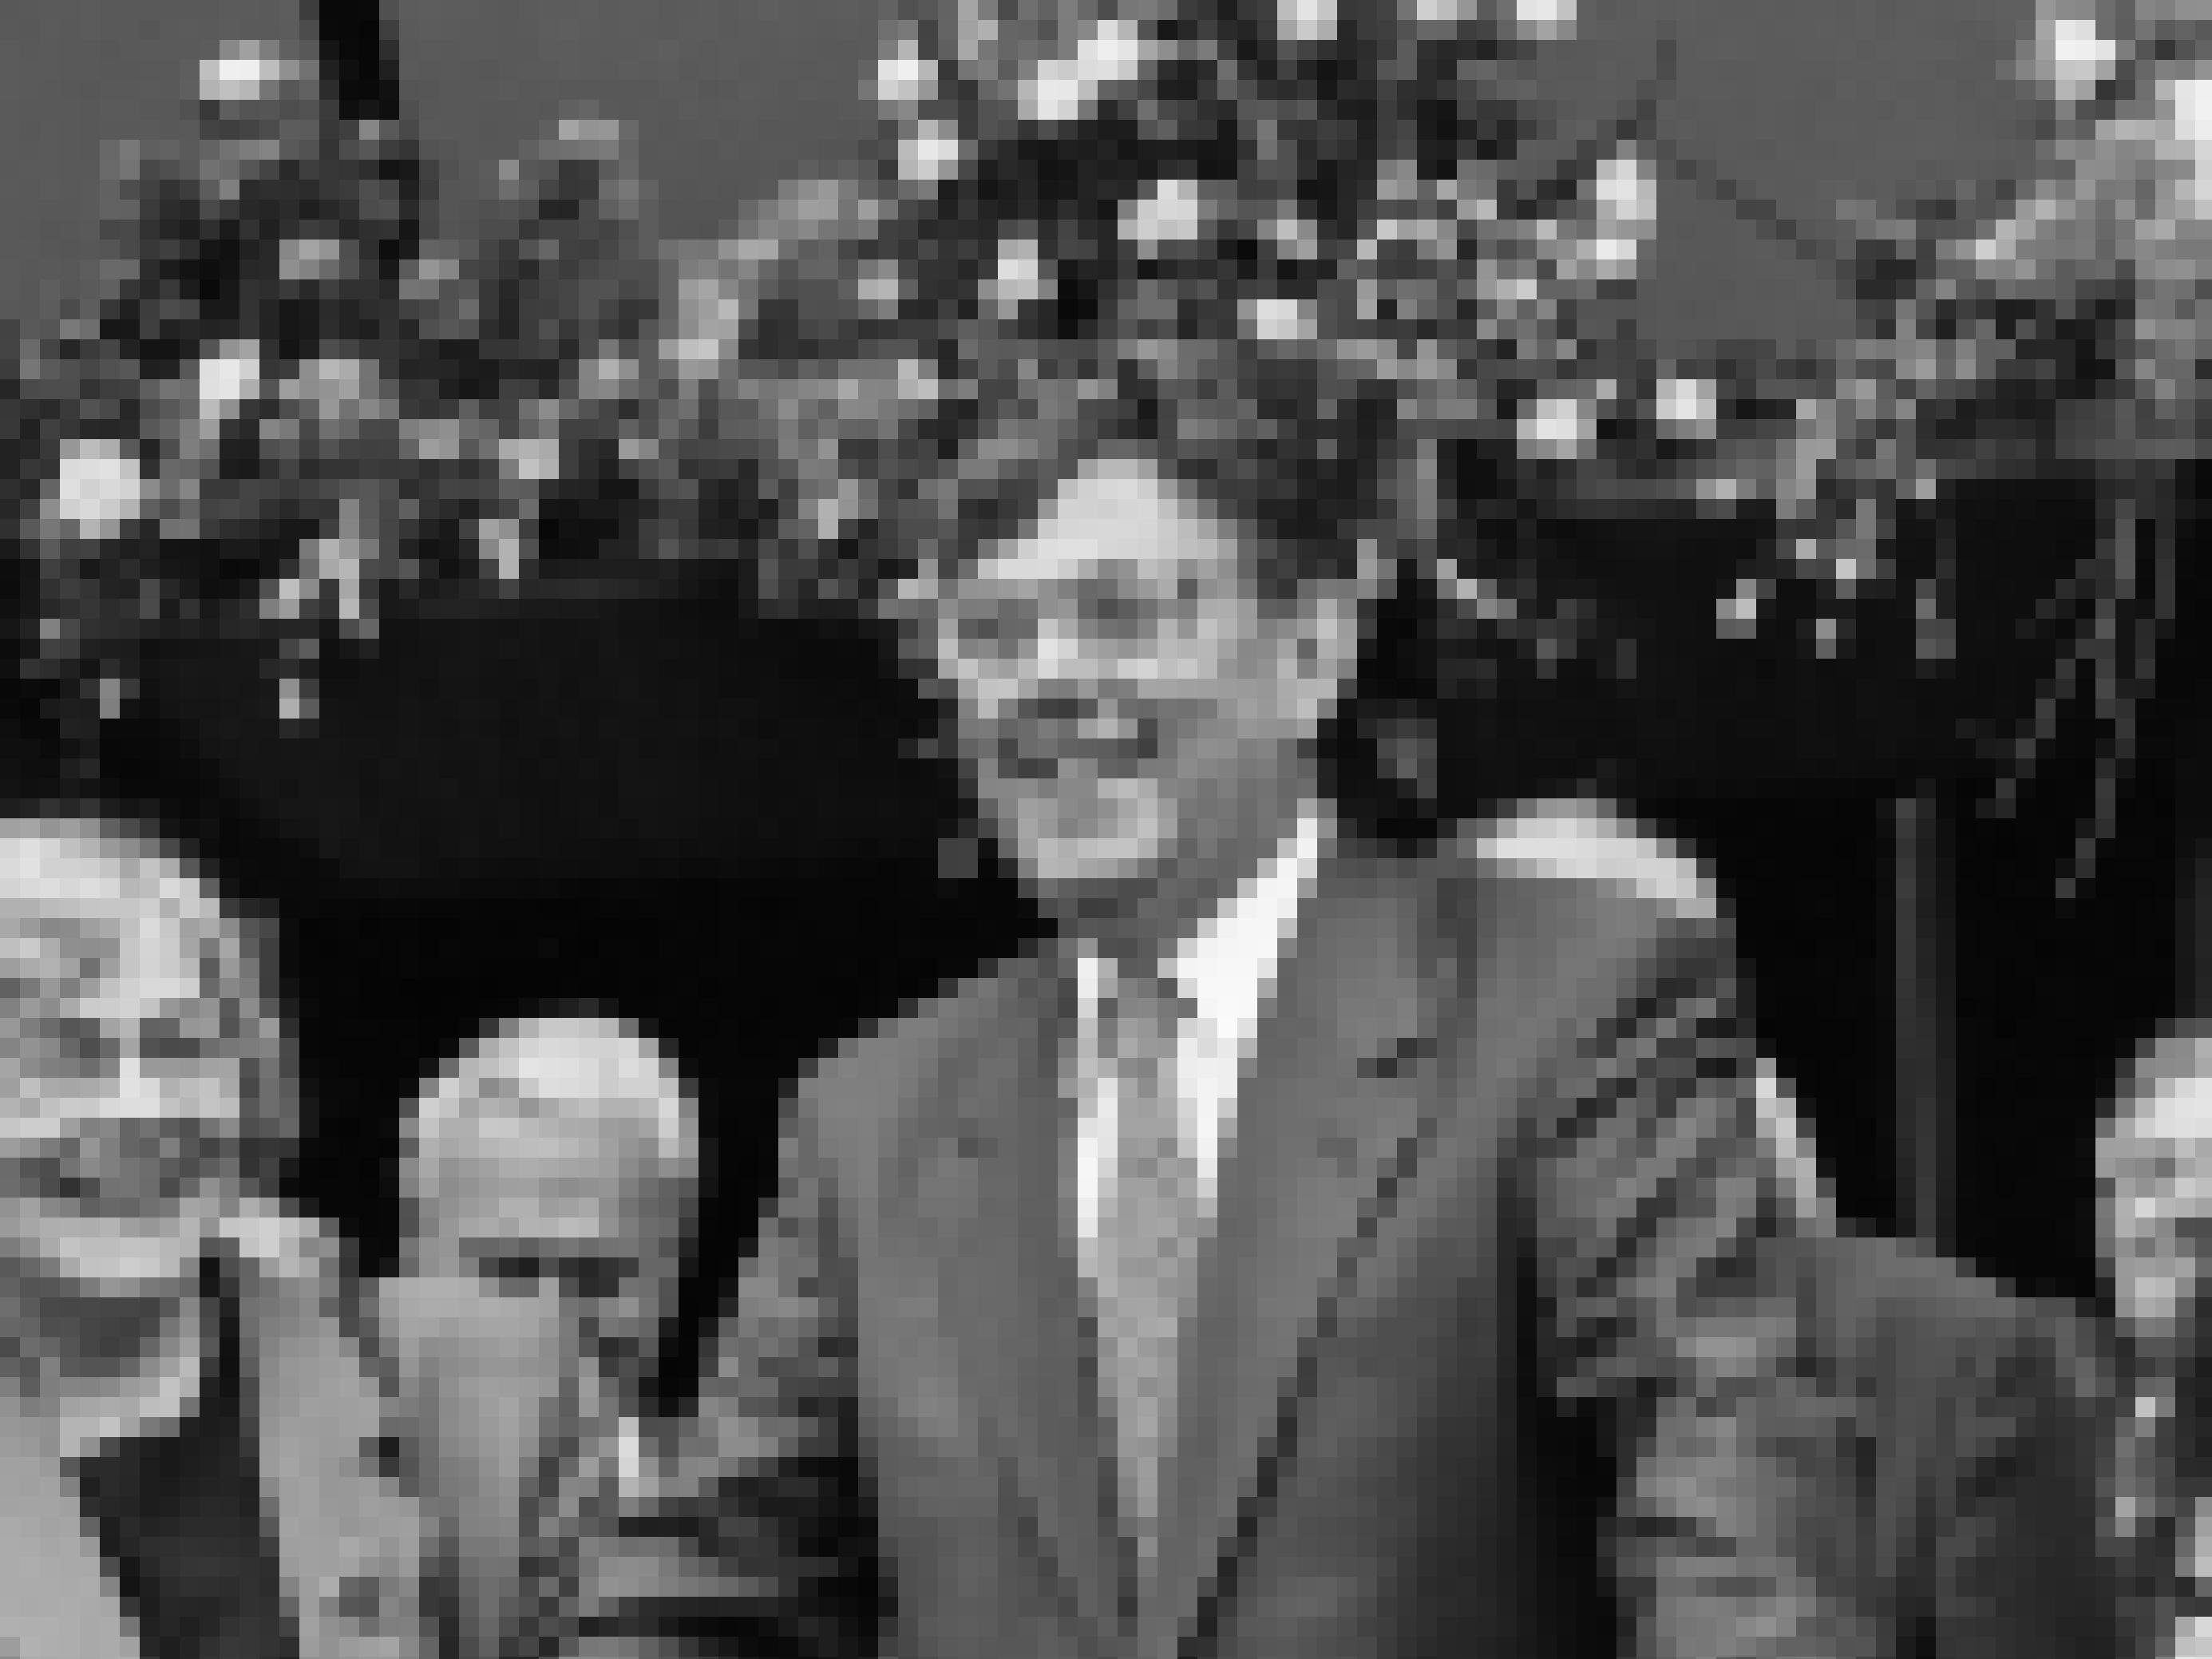 Schwarz/weiß Aufnahme des Nobelpreisträgers Paul Crutzen bei der Preisverleihungsfeier in Mainz 1995. Links neben ihm steht seine Ehefrau Terttu.